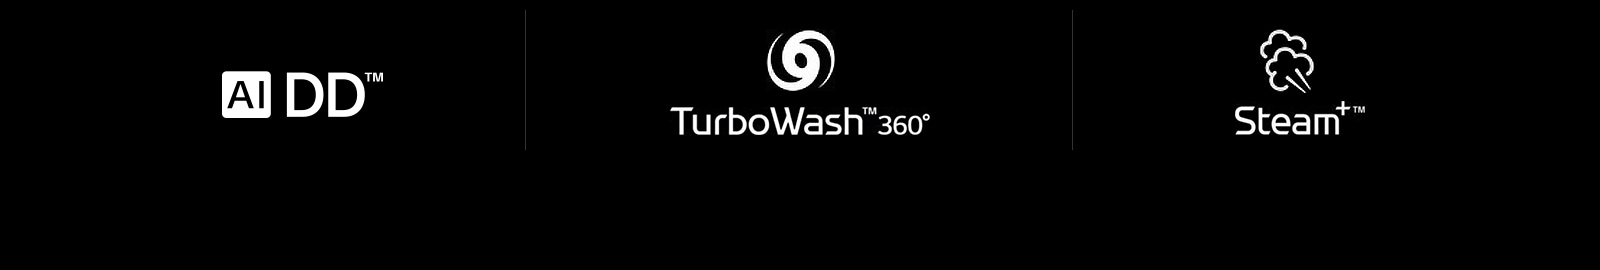 صف يوضح أربعة من علامات إل جي: علامة الدفع المباشر تقنية الذكاء الاصطناعي علامة TurboWash 360 علامة البخار